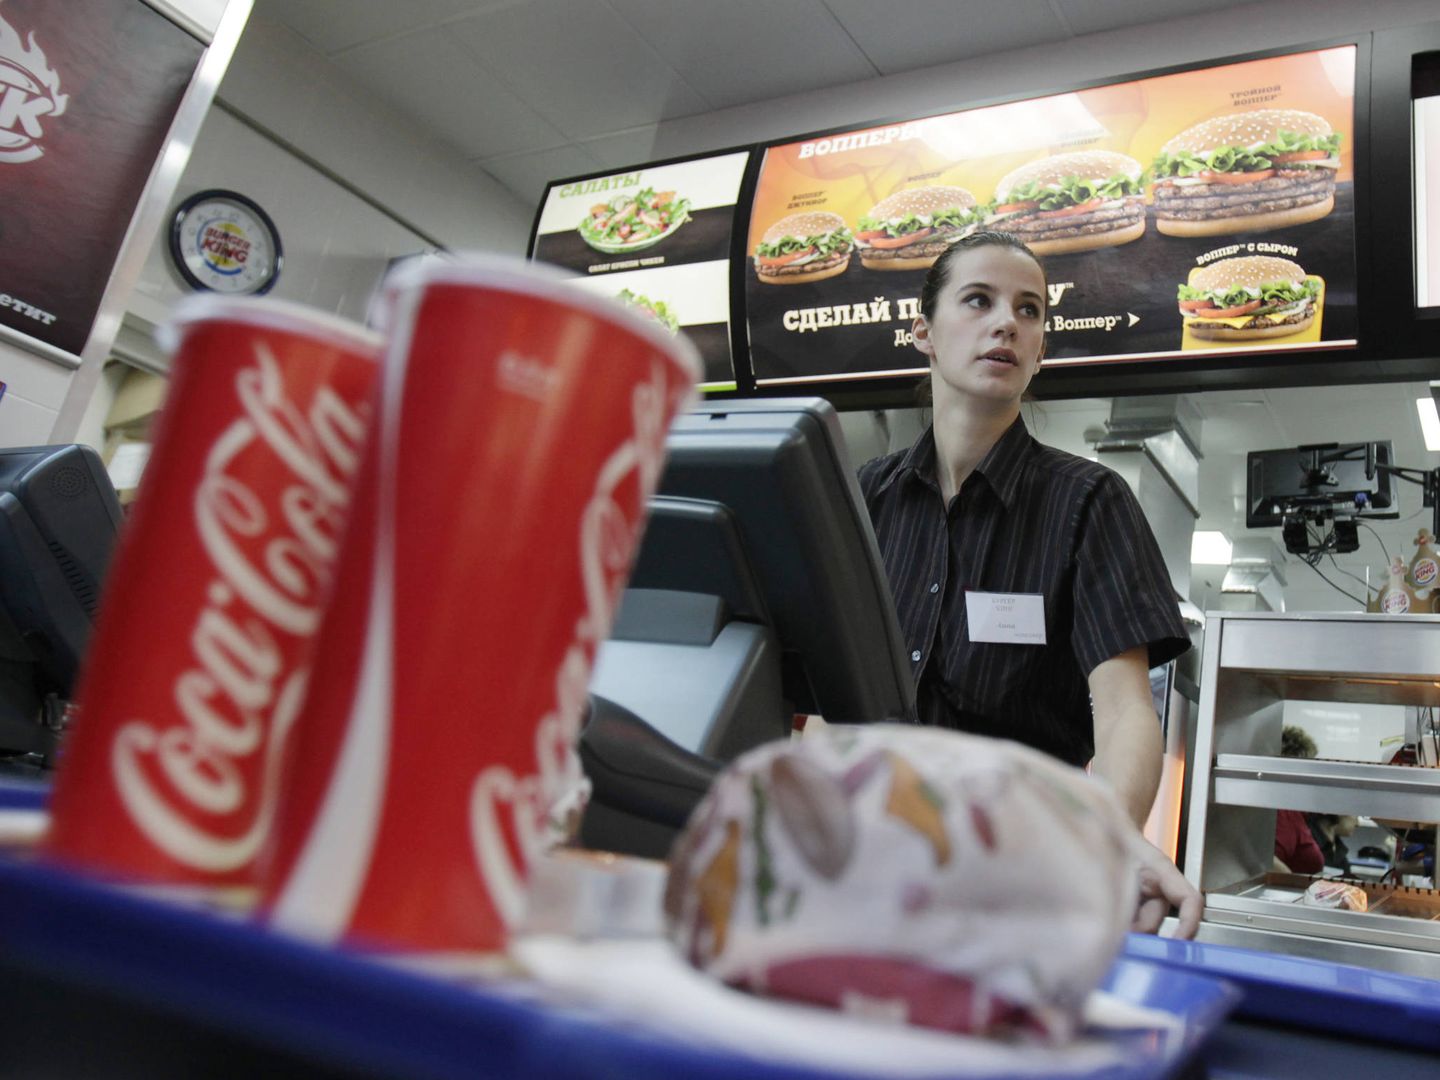 La subida salarial fija prevista para los empleados de Burger King es de un 0,5% en 2018. (Reuters)